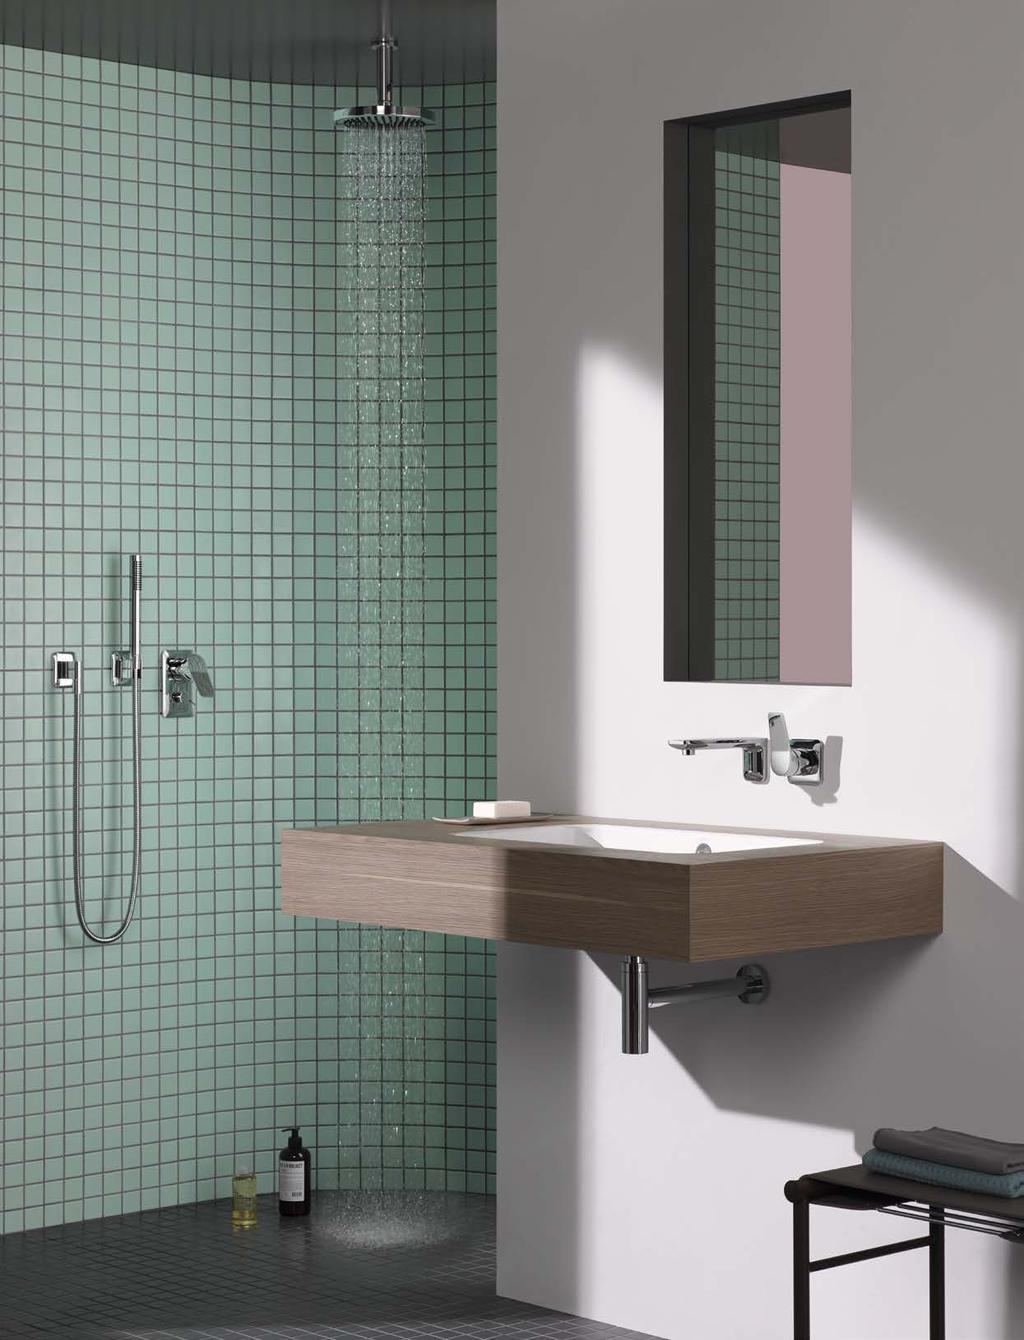 Accentuate your bathroom FR Qu est ce qui rend la salle de bain spéciale si spéciale? L approche au style affirmé des formes et des proportions. La ligne claire.